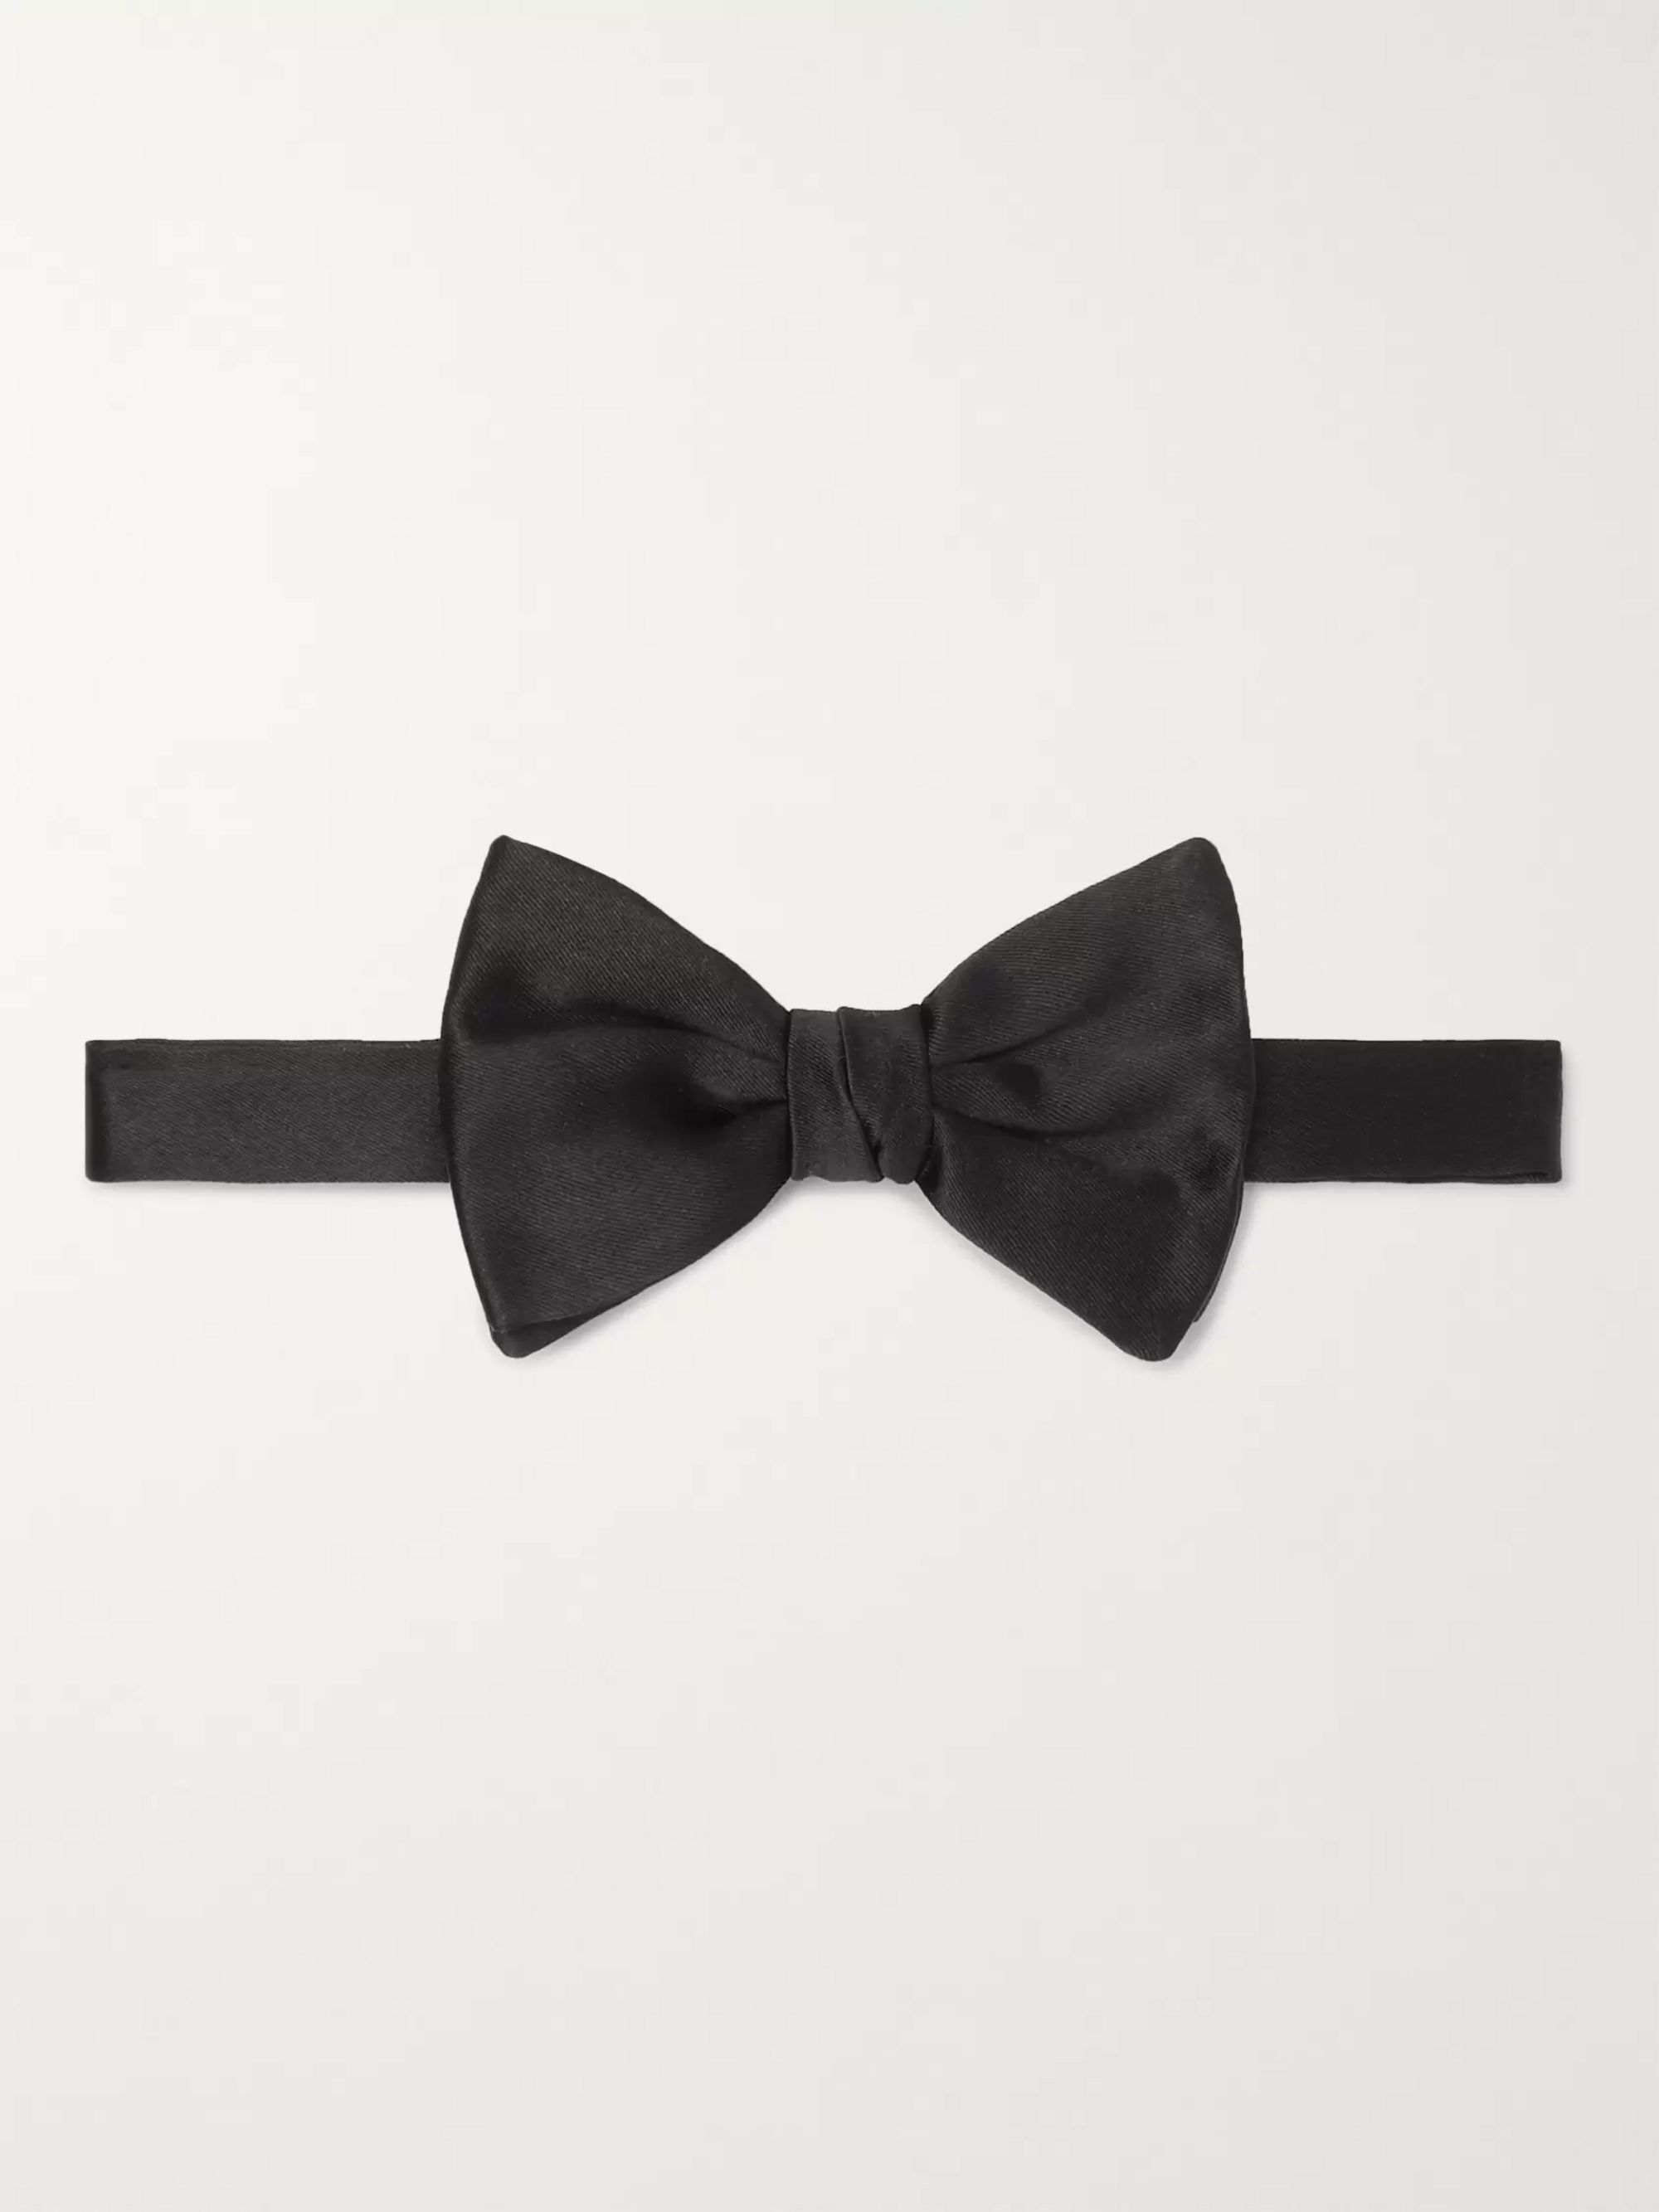 armani black tie